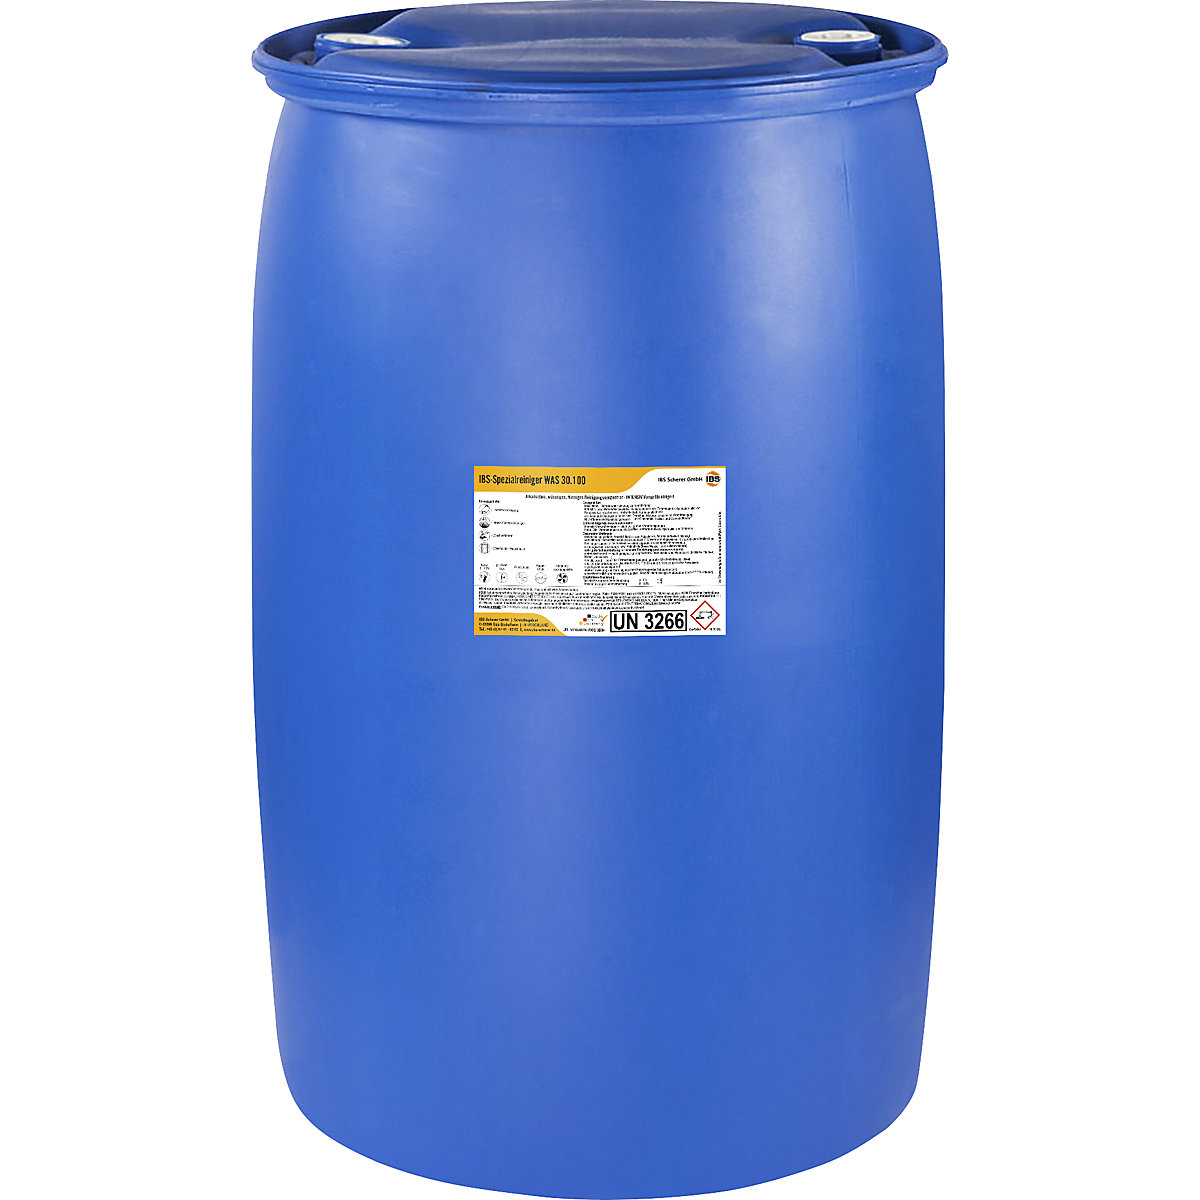 Płyn do urządzeń wysokociśnieniowych / spryskiwania wstępnego WAS 30.100 – IBS Scherer, wartość pH 13,5, poj. 200 l-6